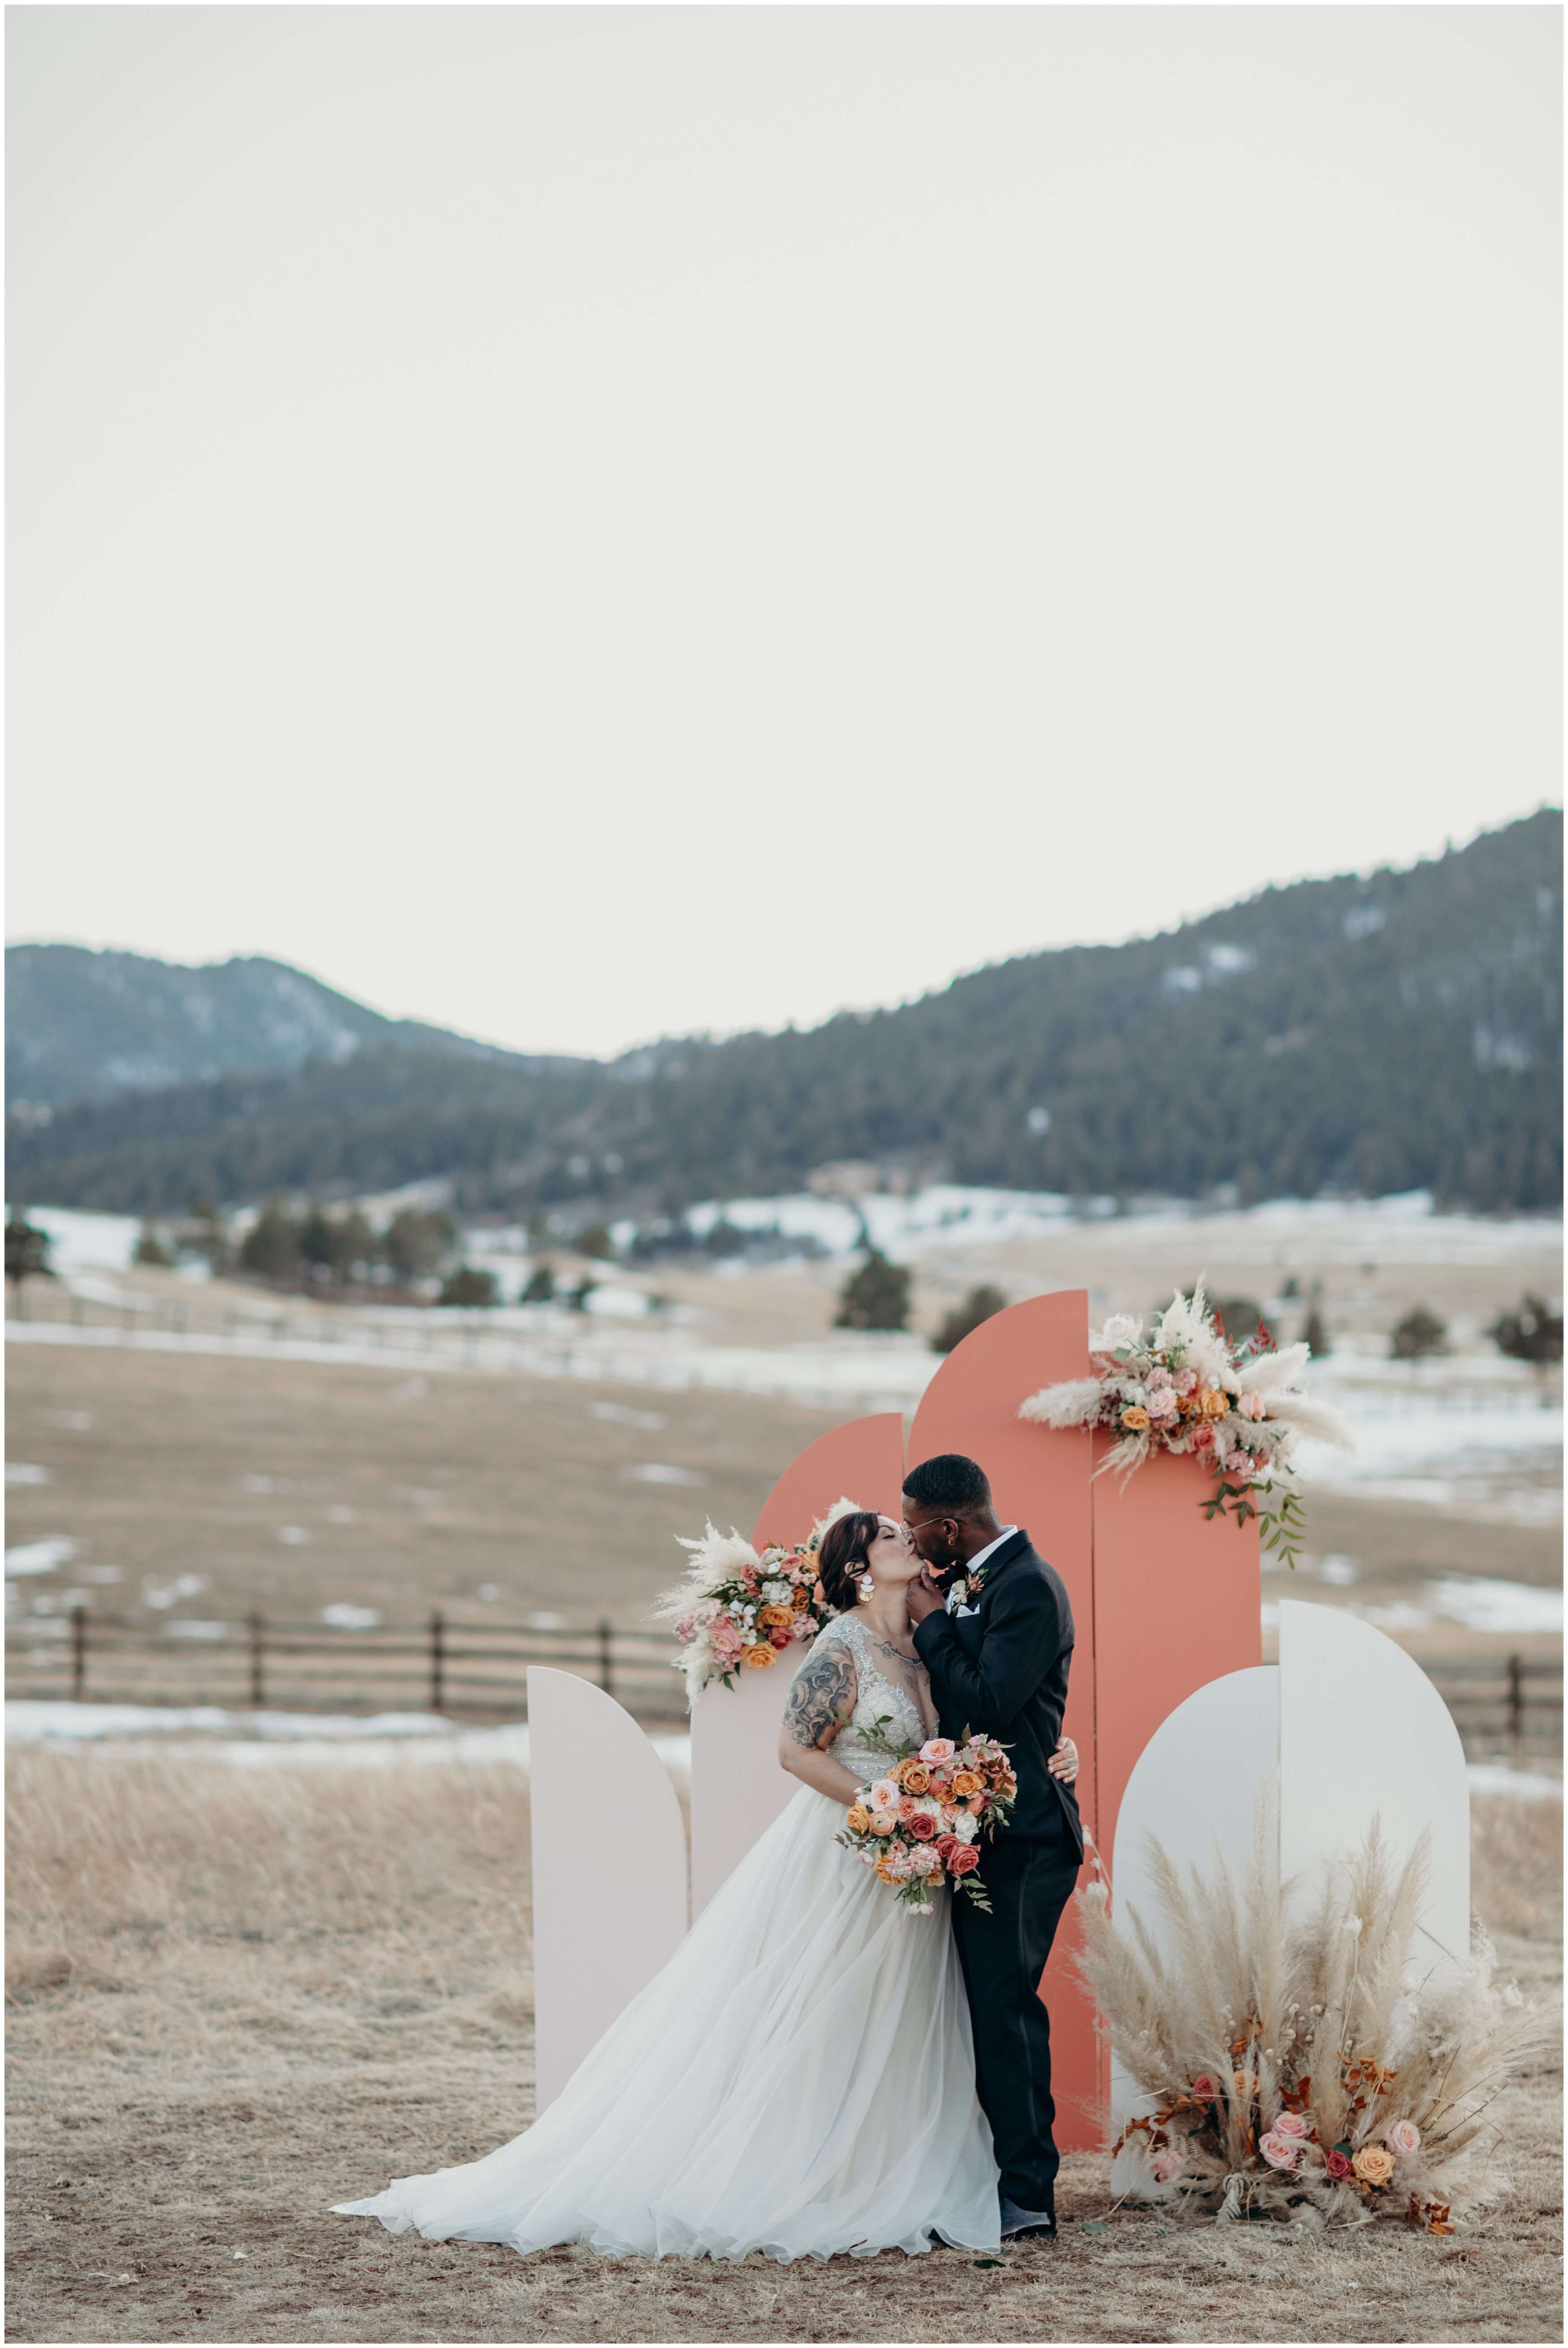 Spruce mountain ranch wedding colorado
